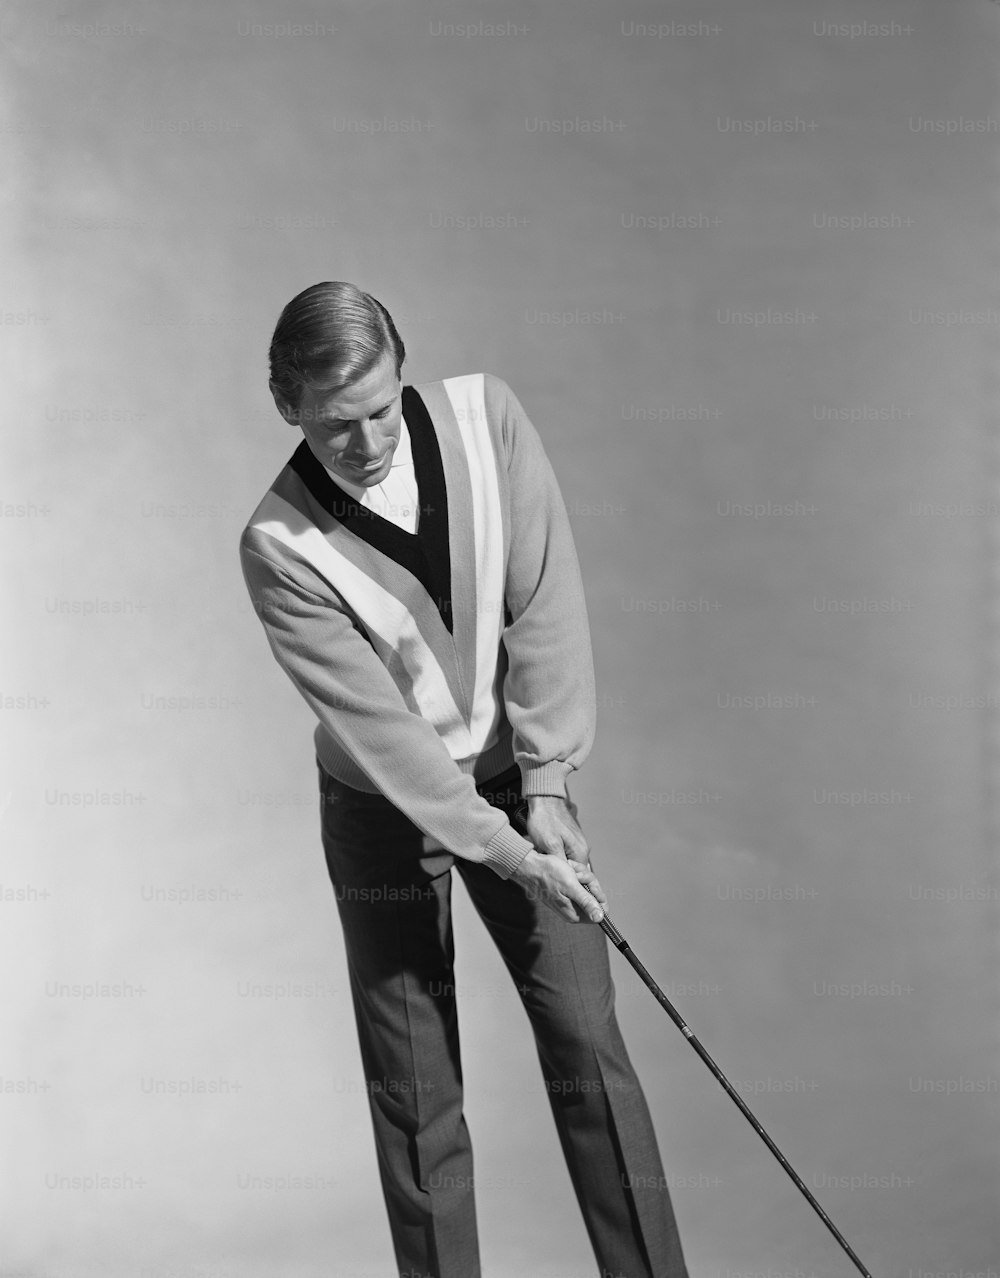 Ein Mann, der einen Golfschläger in der rechten Hand hält